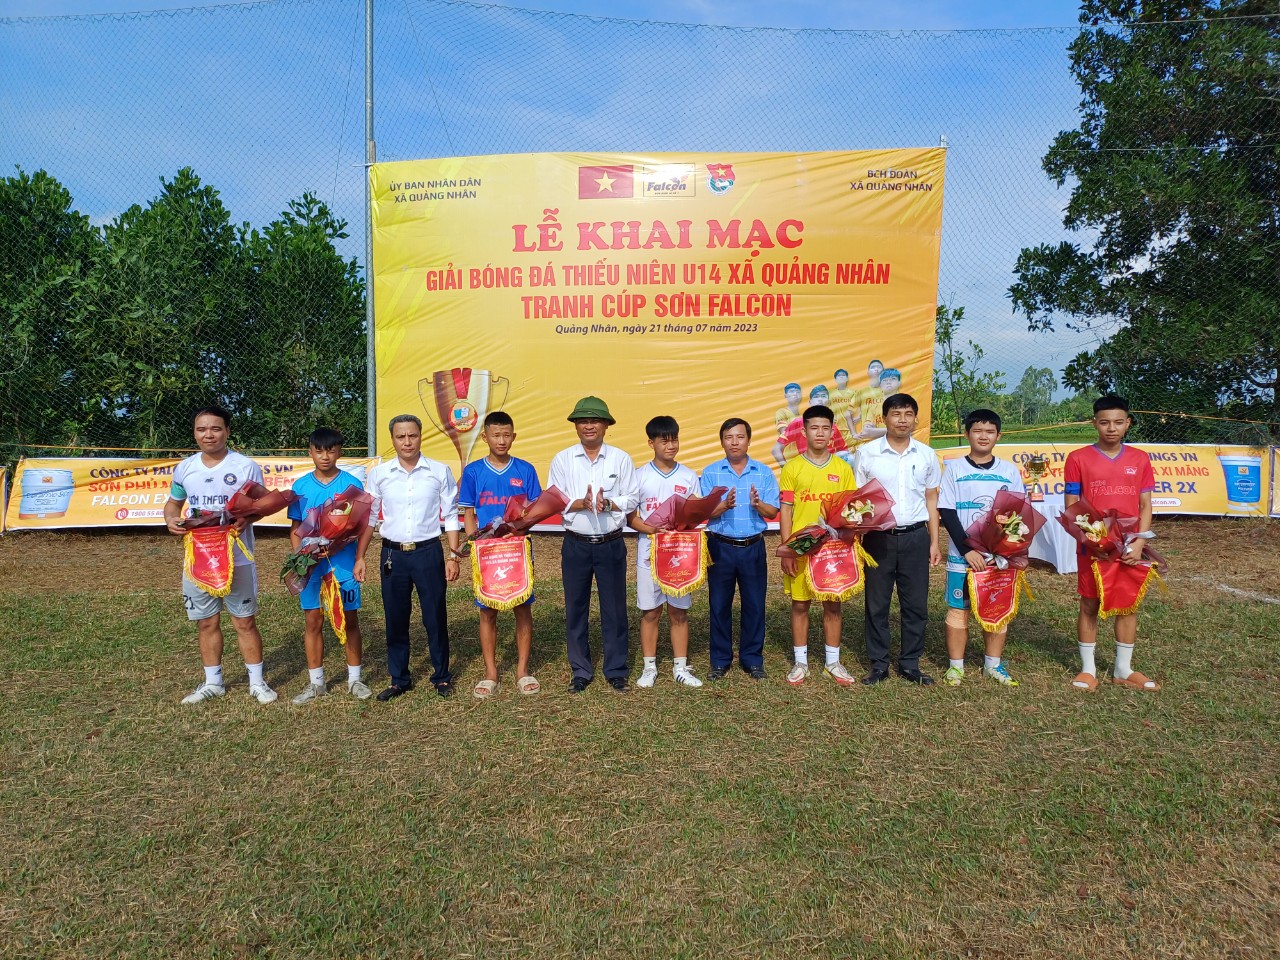 Khai mạc Giải bóng đá thiếu niên U14 xã Quảng Nhân